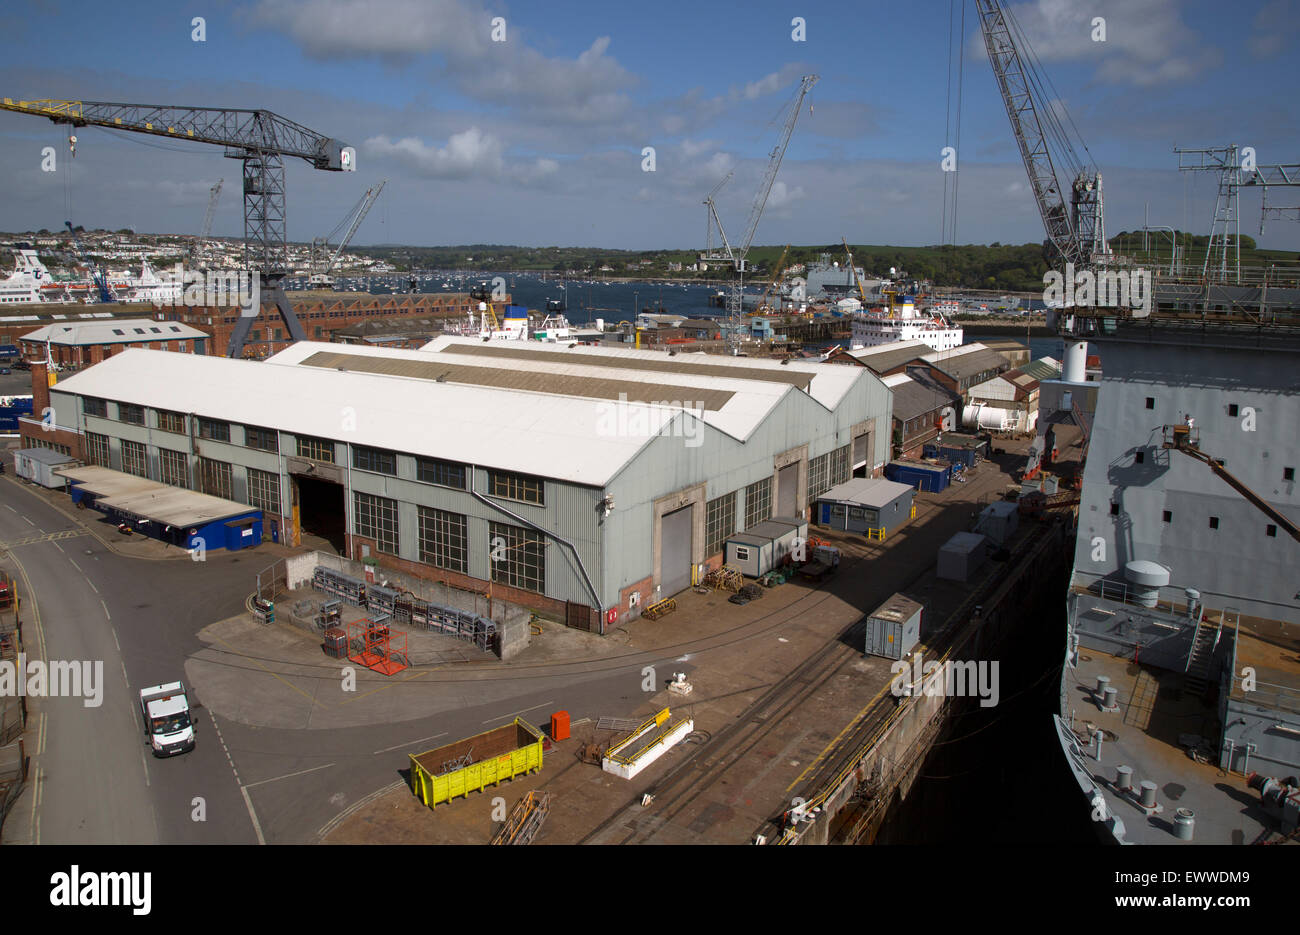 Port and docks at Falmouth, Cornwall, England, UK Stock Photo